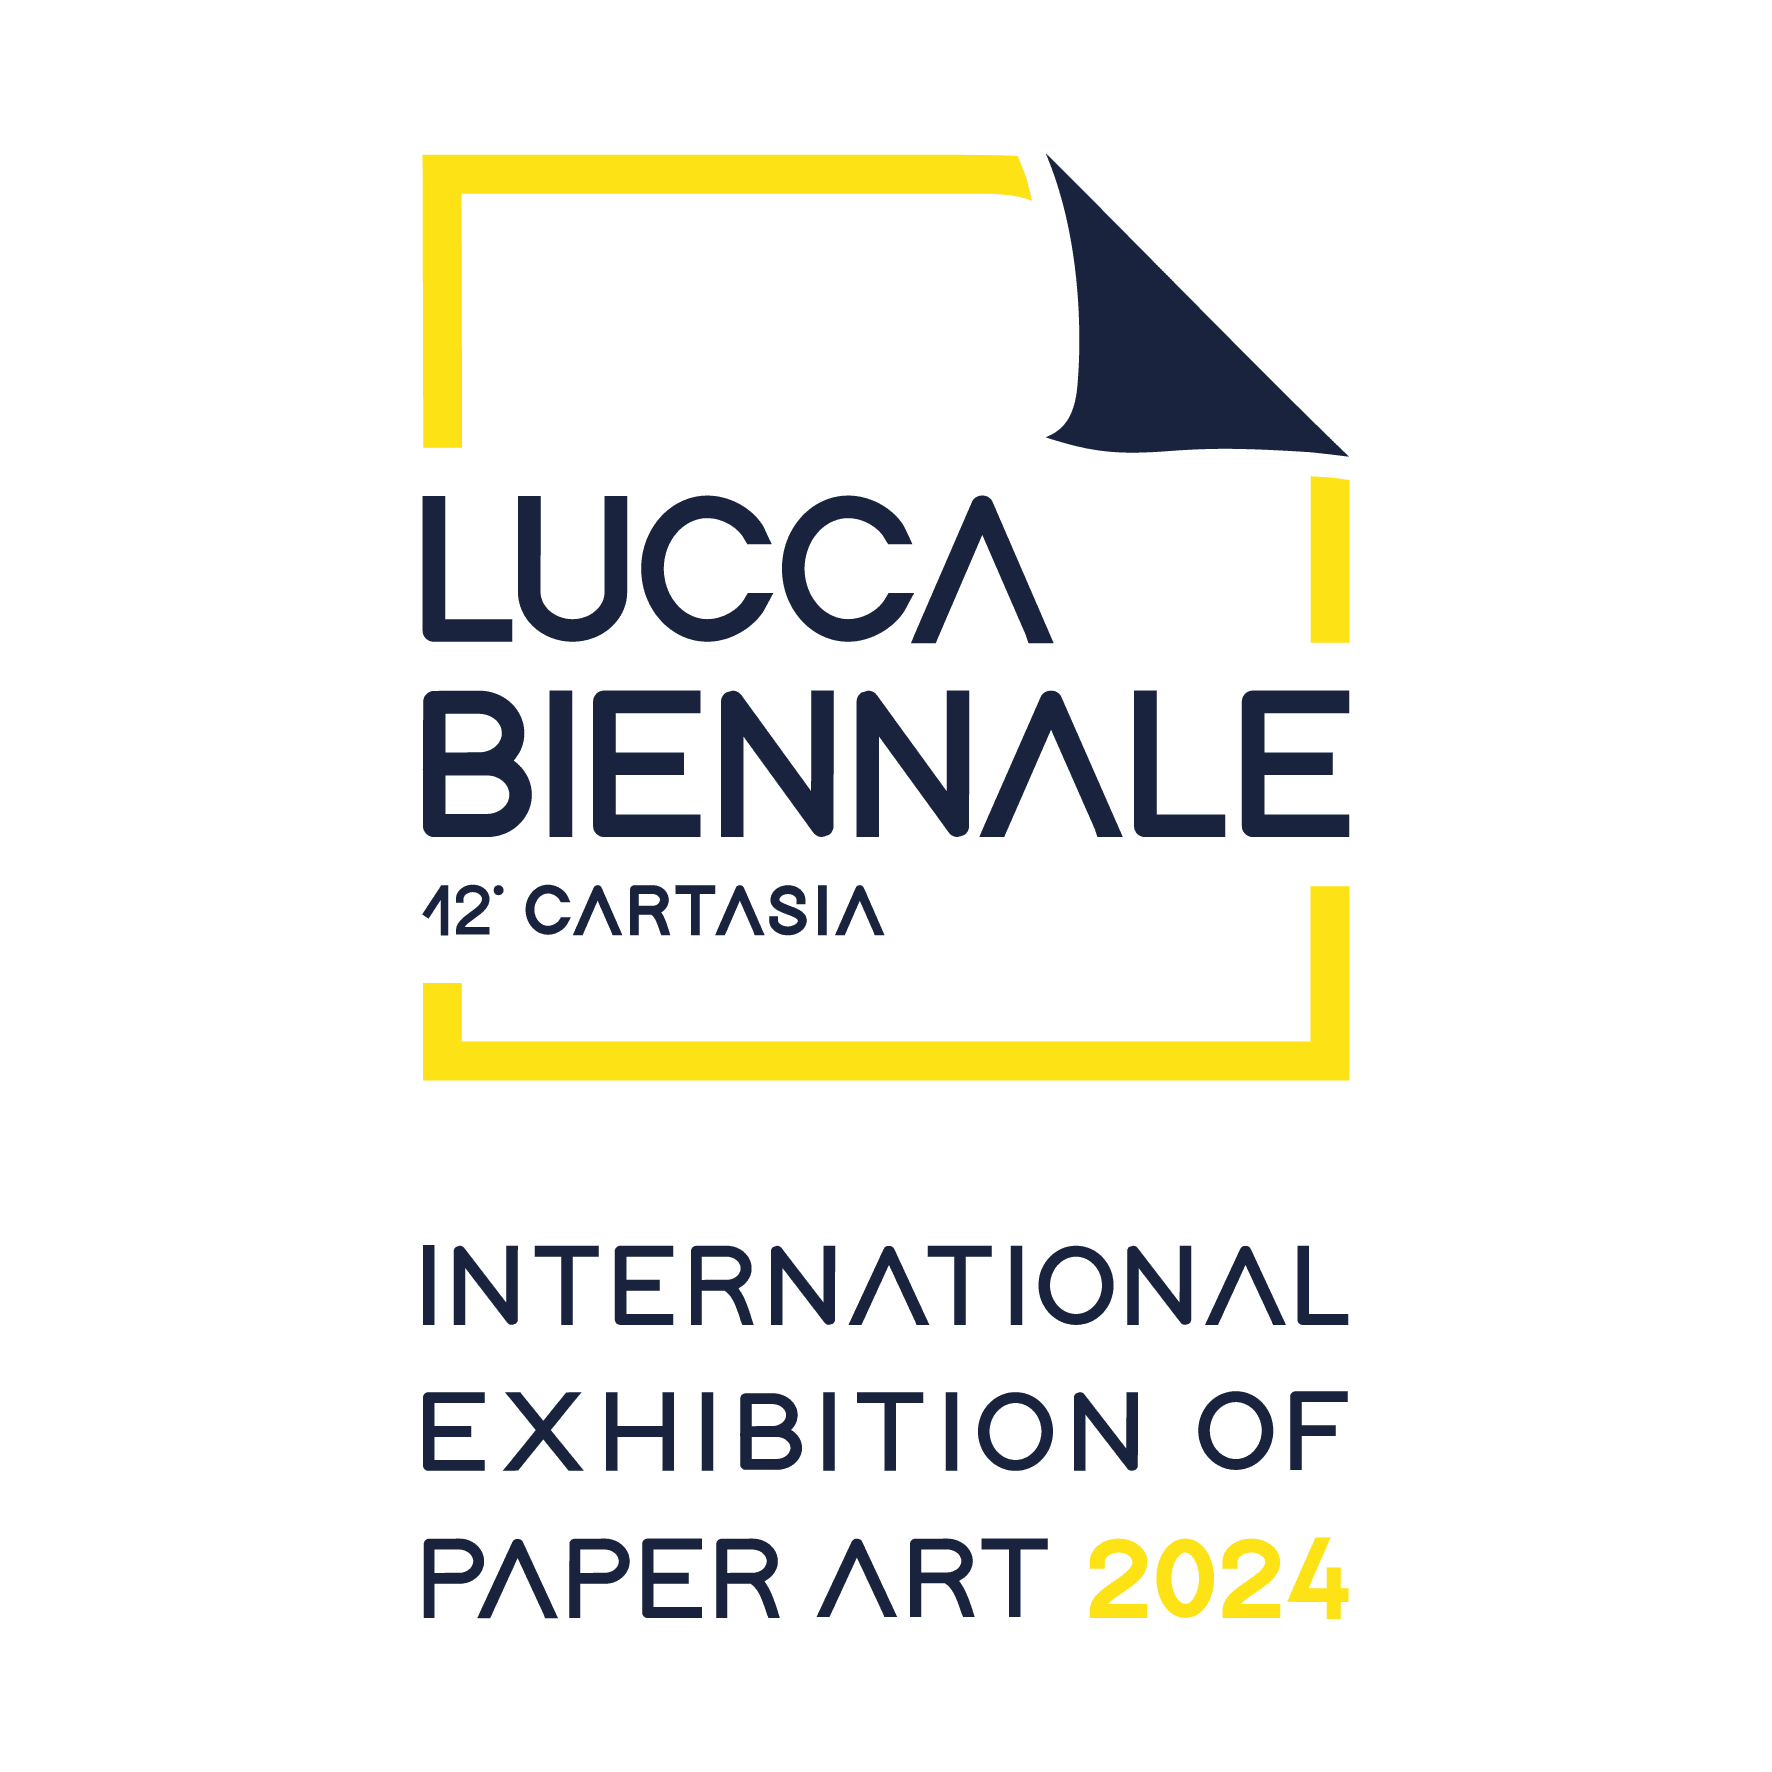 ARTE IN CARTA per LUBICA - Bando Indoor e videoarte - Lucca Biennale Cartasia - educare al bello - Qui ed Ora Domani